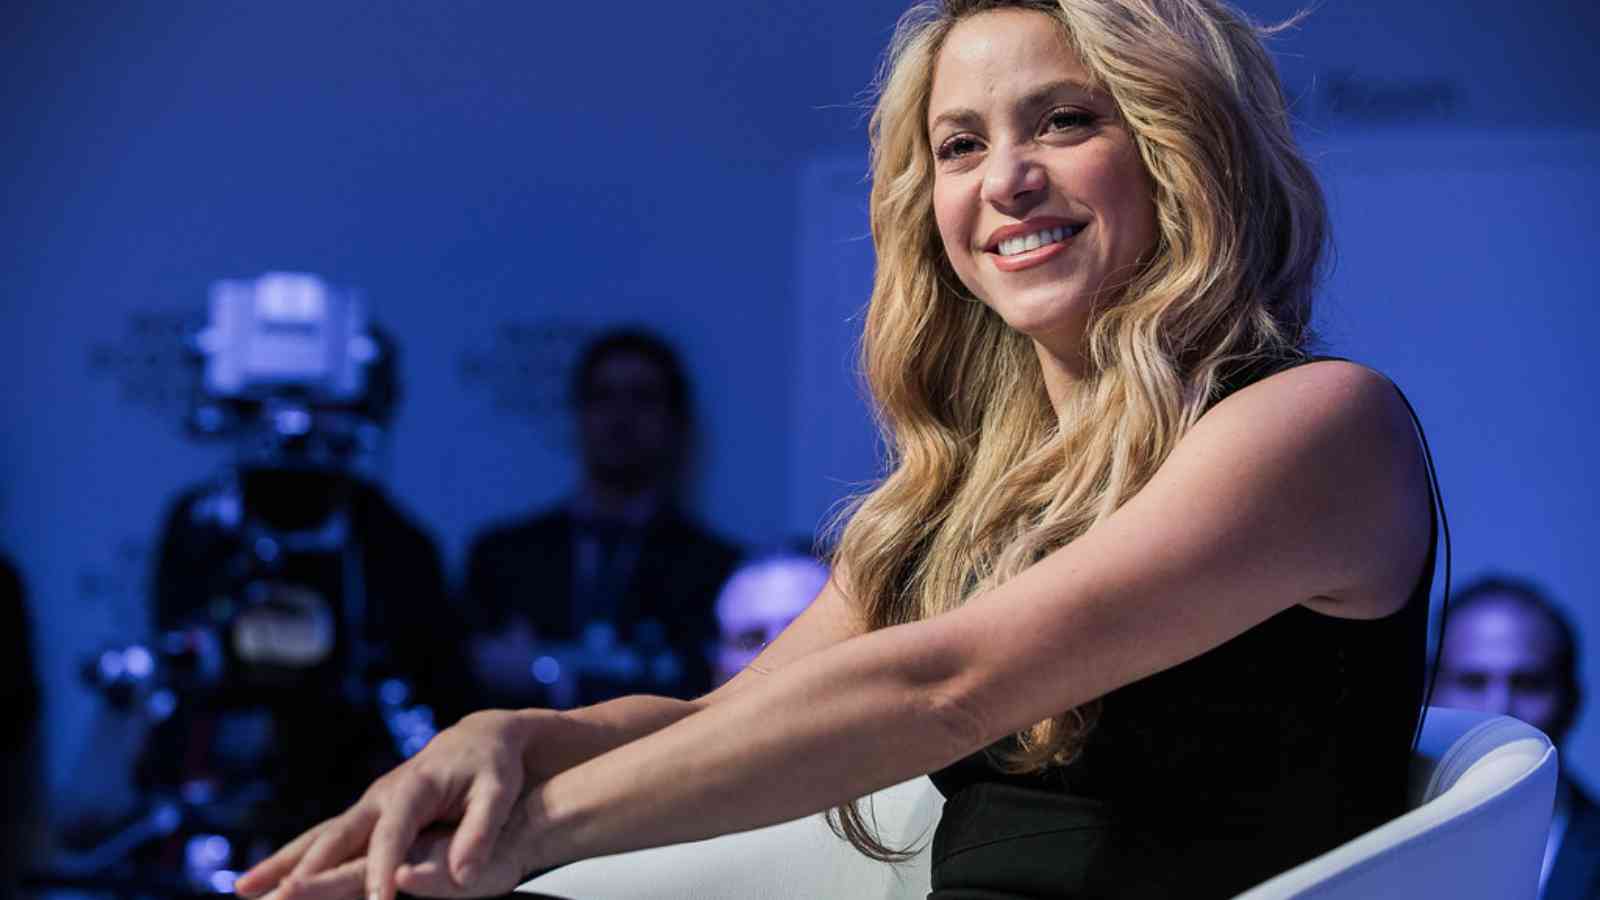 Shakira Biography: Age, Height, Birthday, Family, Net Worth